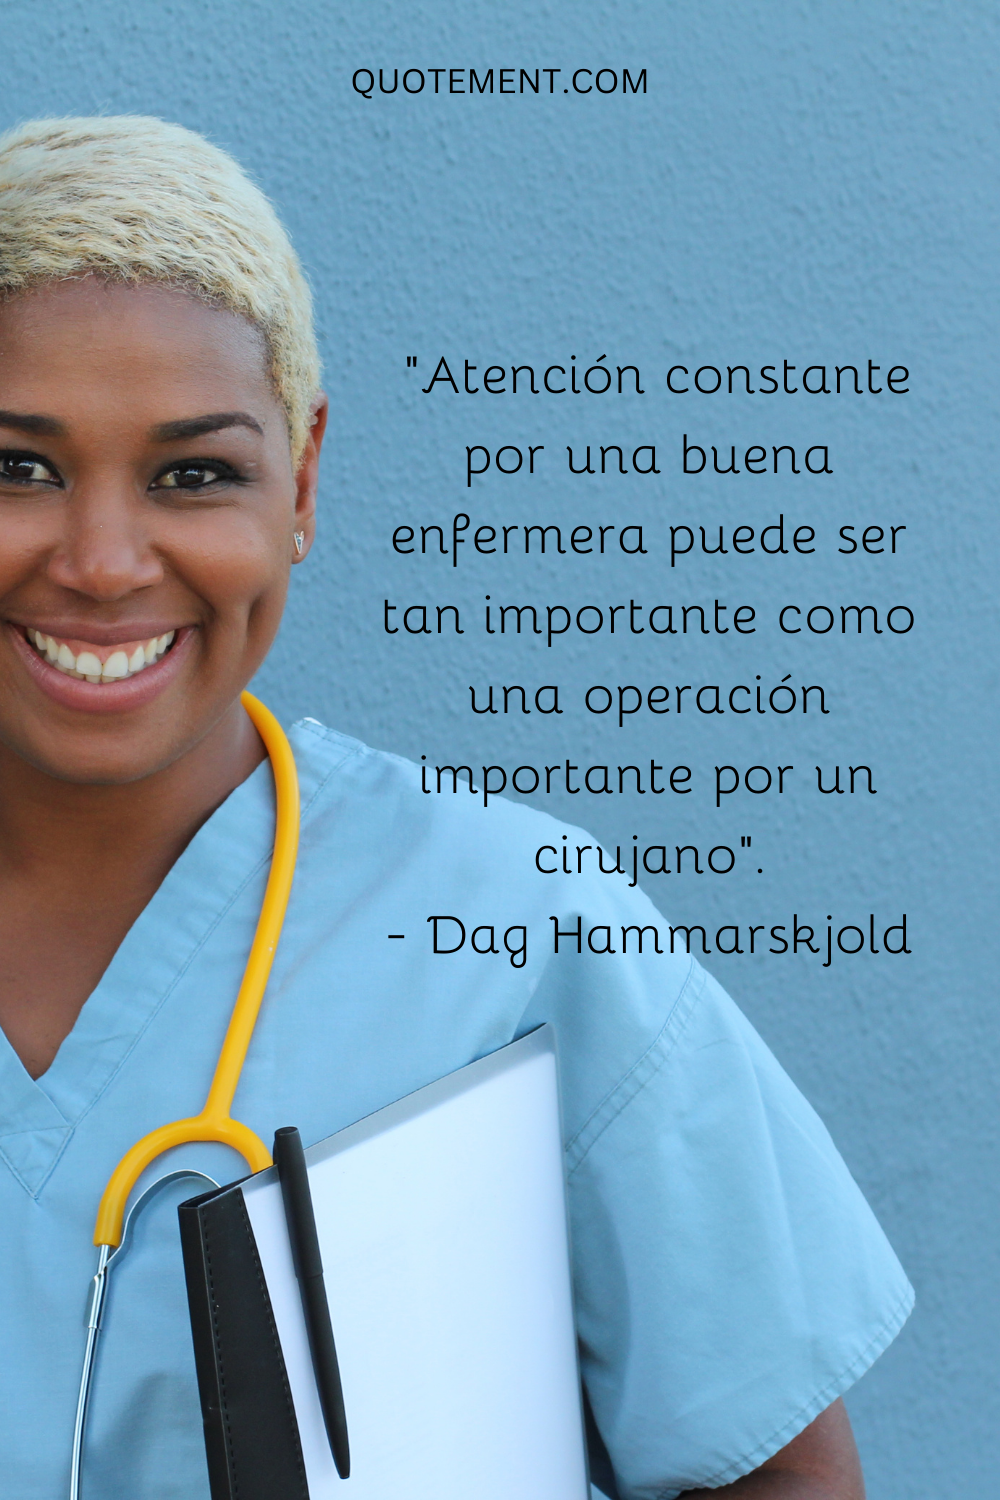 "La atención constante de una buena enfermera puede ser tan importante como una operación importante de un cirujano". - Dag Hammarskjold